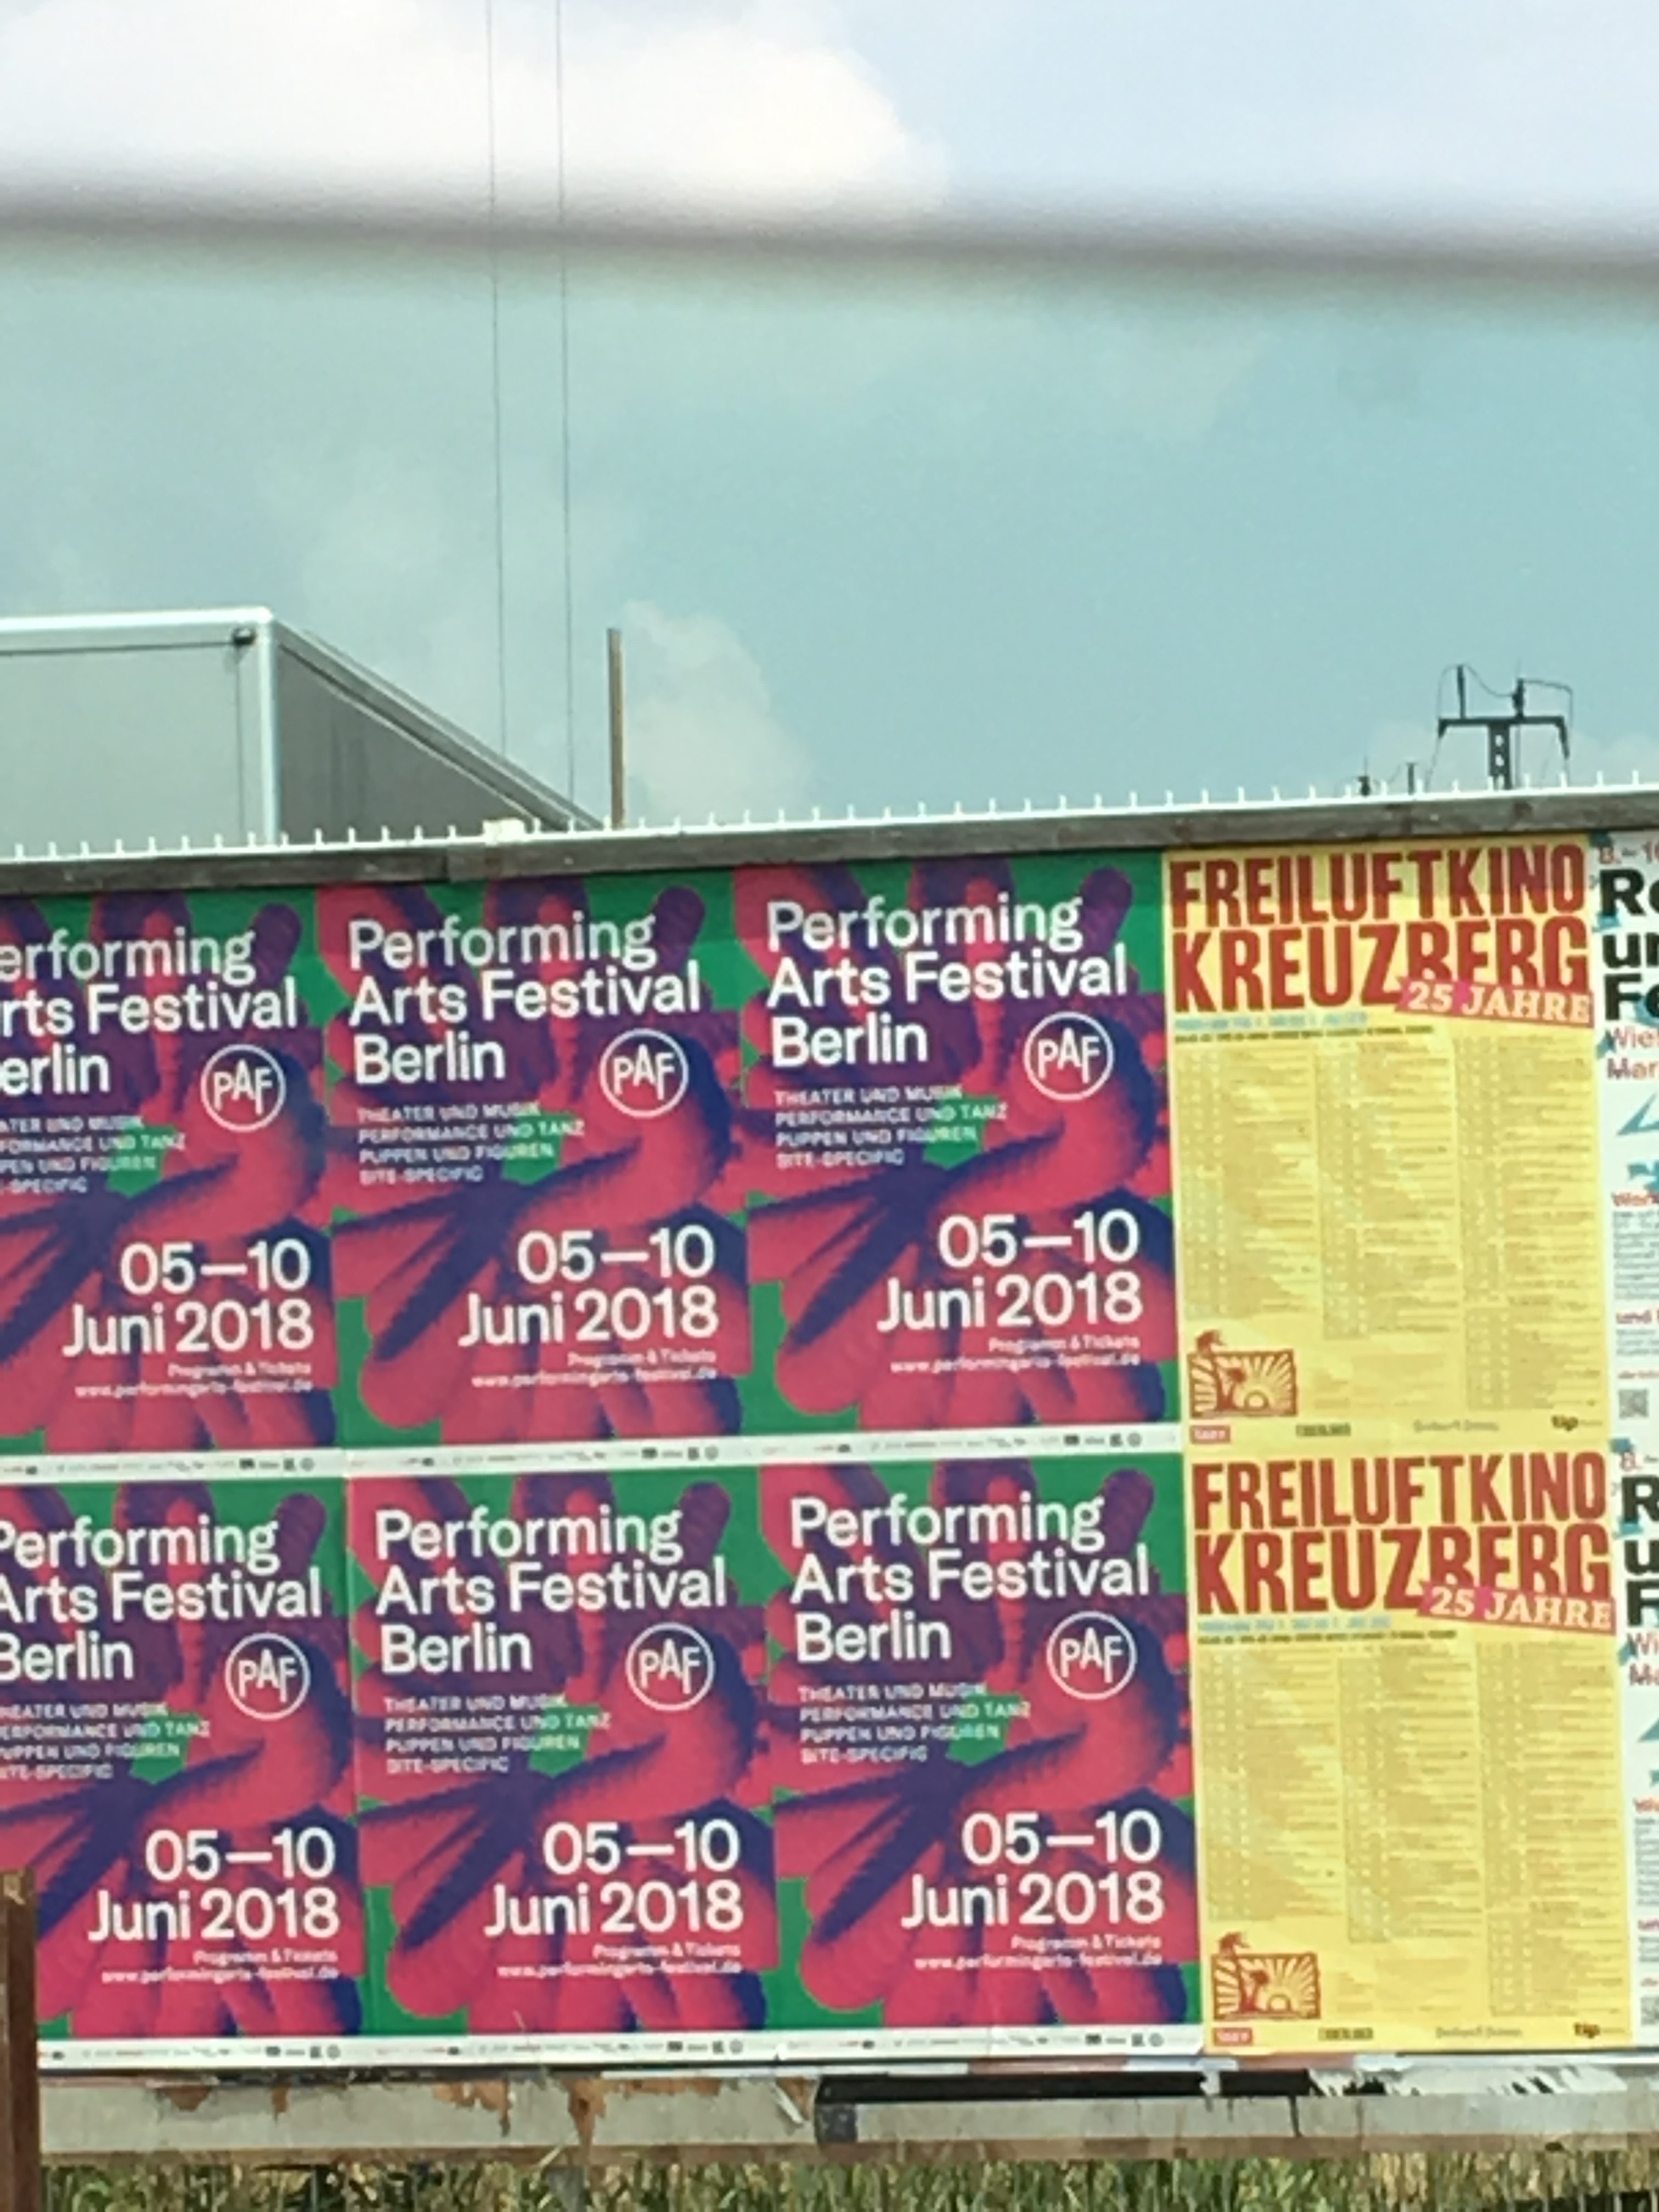 fliers advertising Performing Arts Festival Berlin